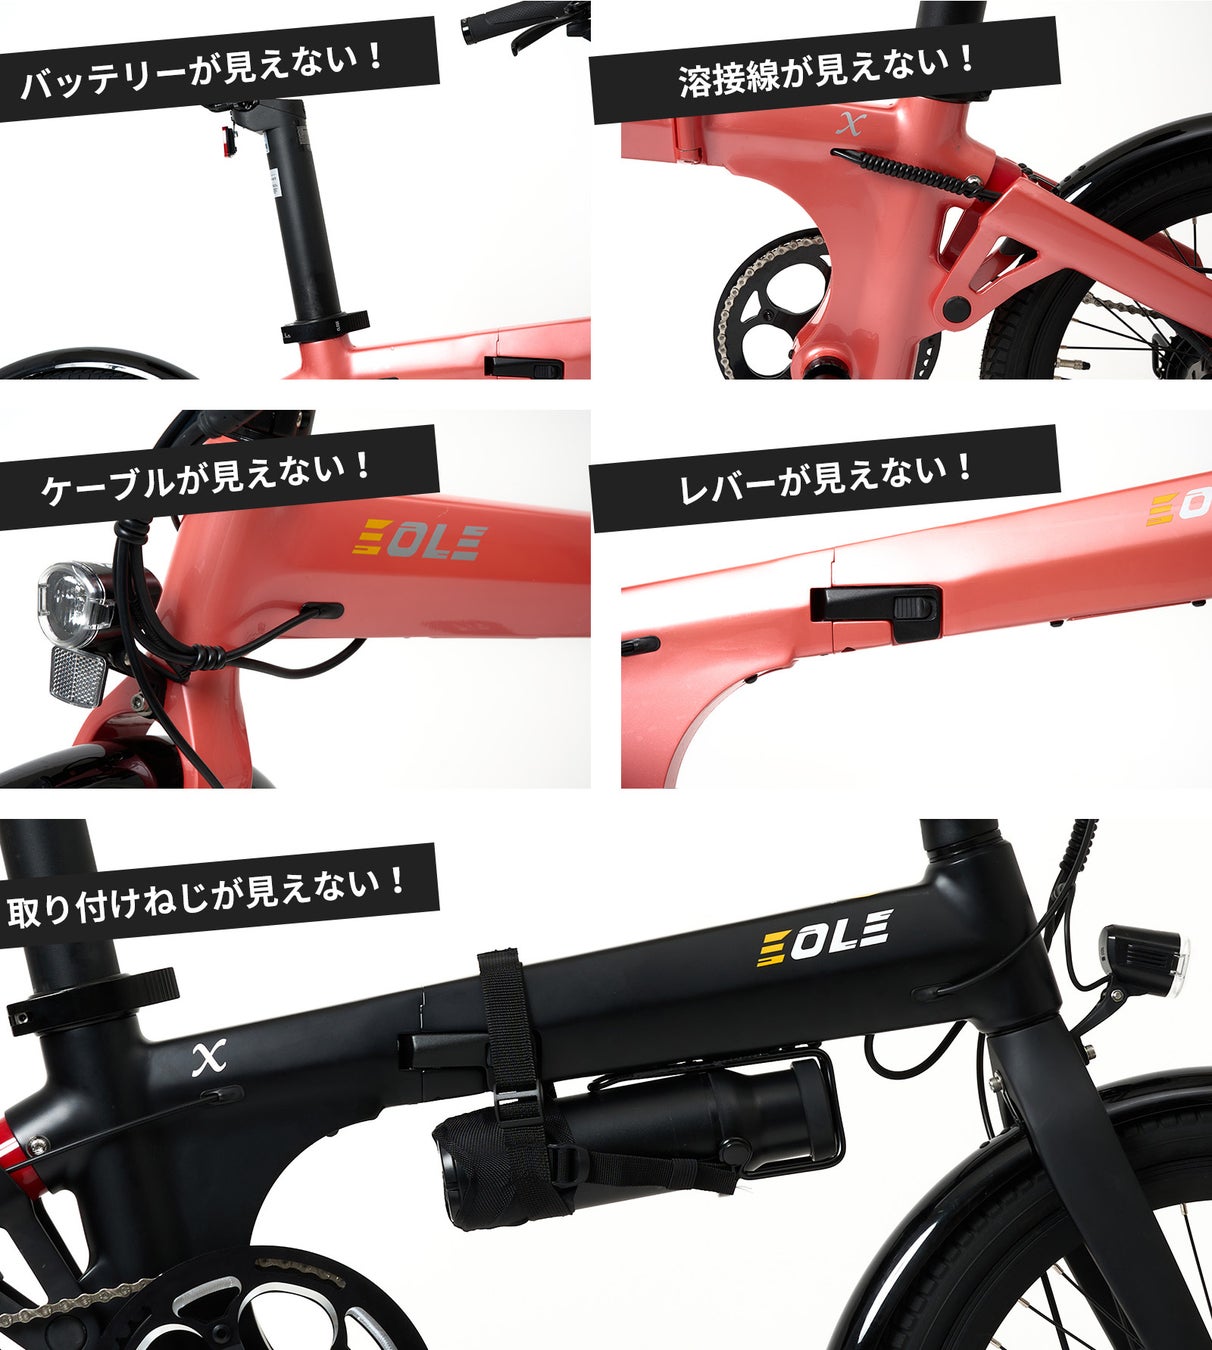 今ヨーロッパで話題の美しいデザインと高性能を兼ね備えた、近未来型折り畳み電動自転車！「Morfuns EOLE X」が応援購入サイトMakuakeにて日本初登場のサブ画像5